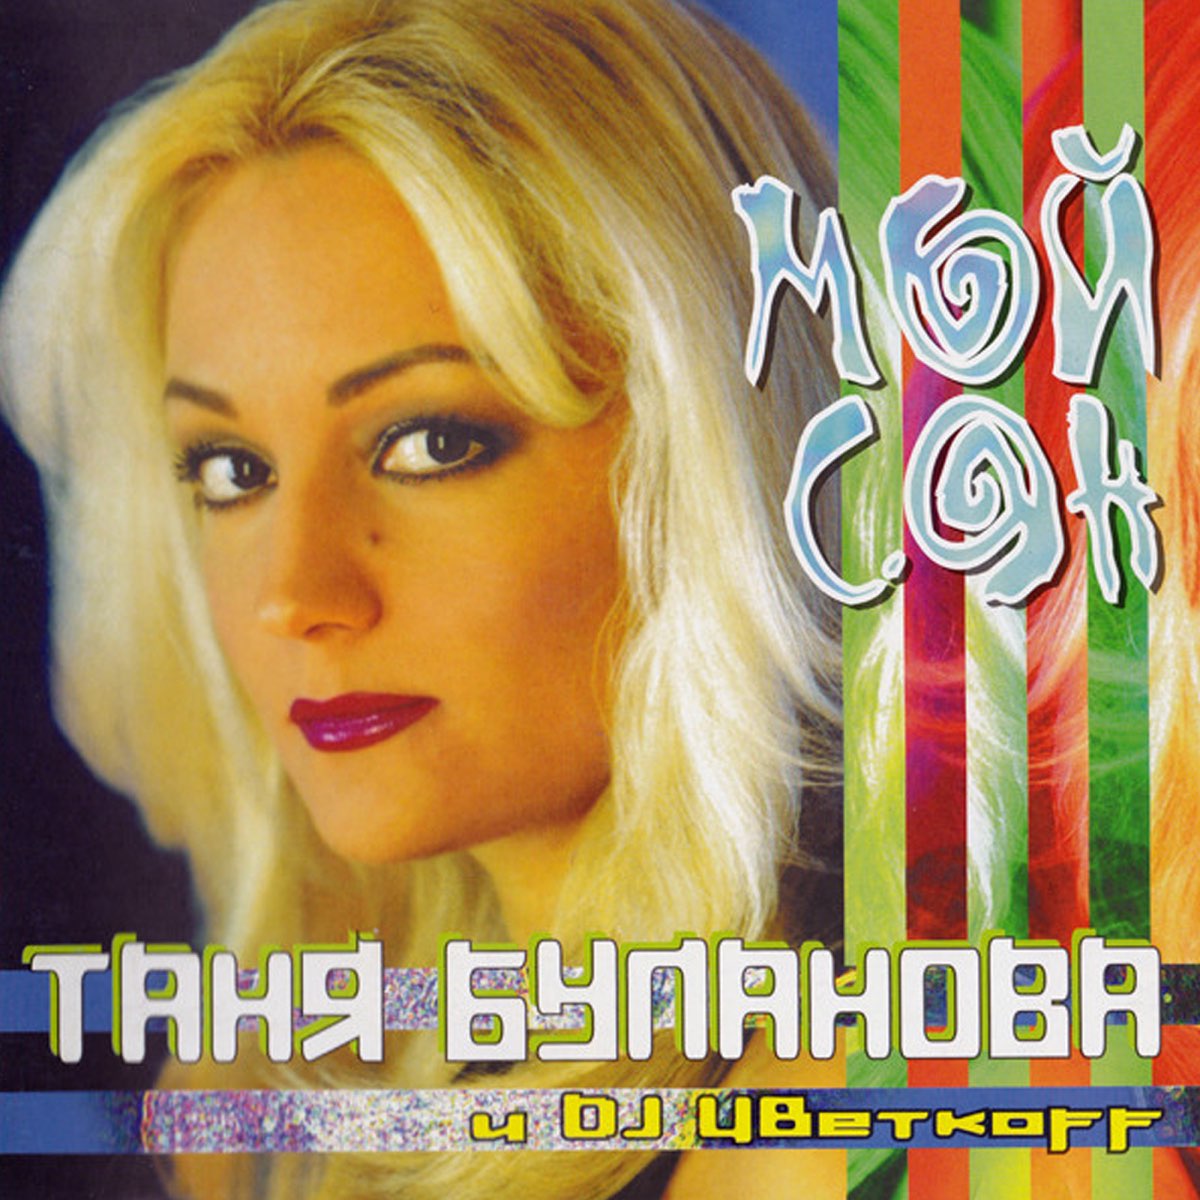 Булановой песню измена. Таня Буланова & DJ Цветкоff - мой сон. Таня Буланова 2000.